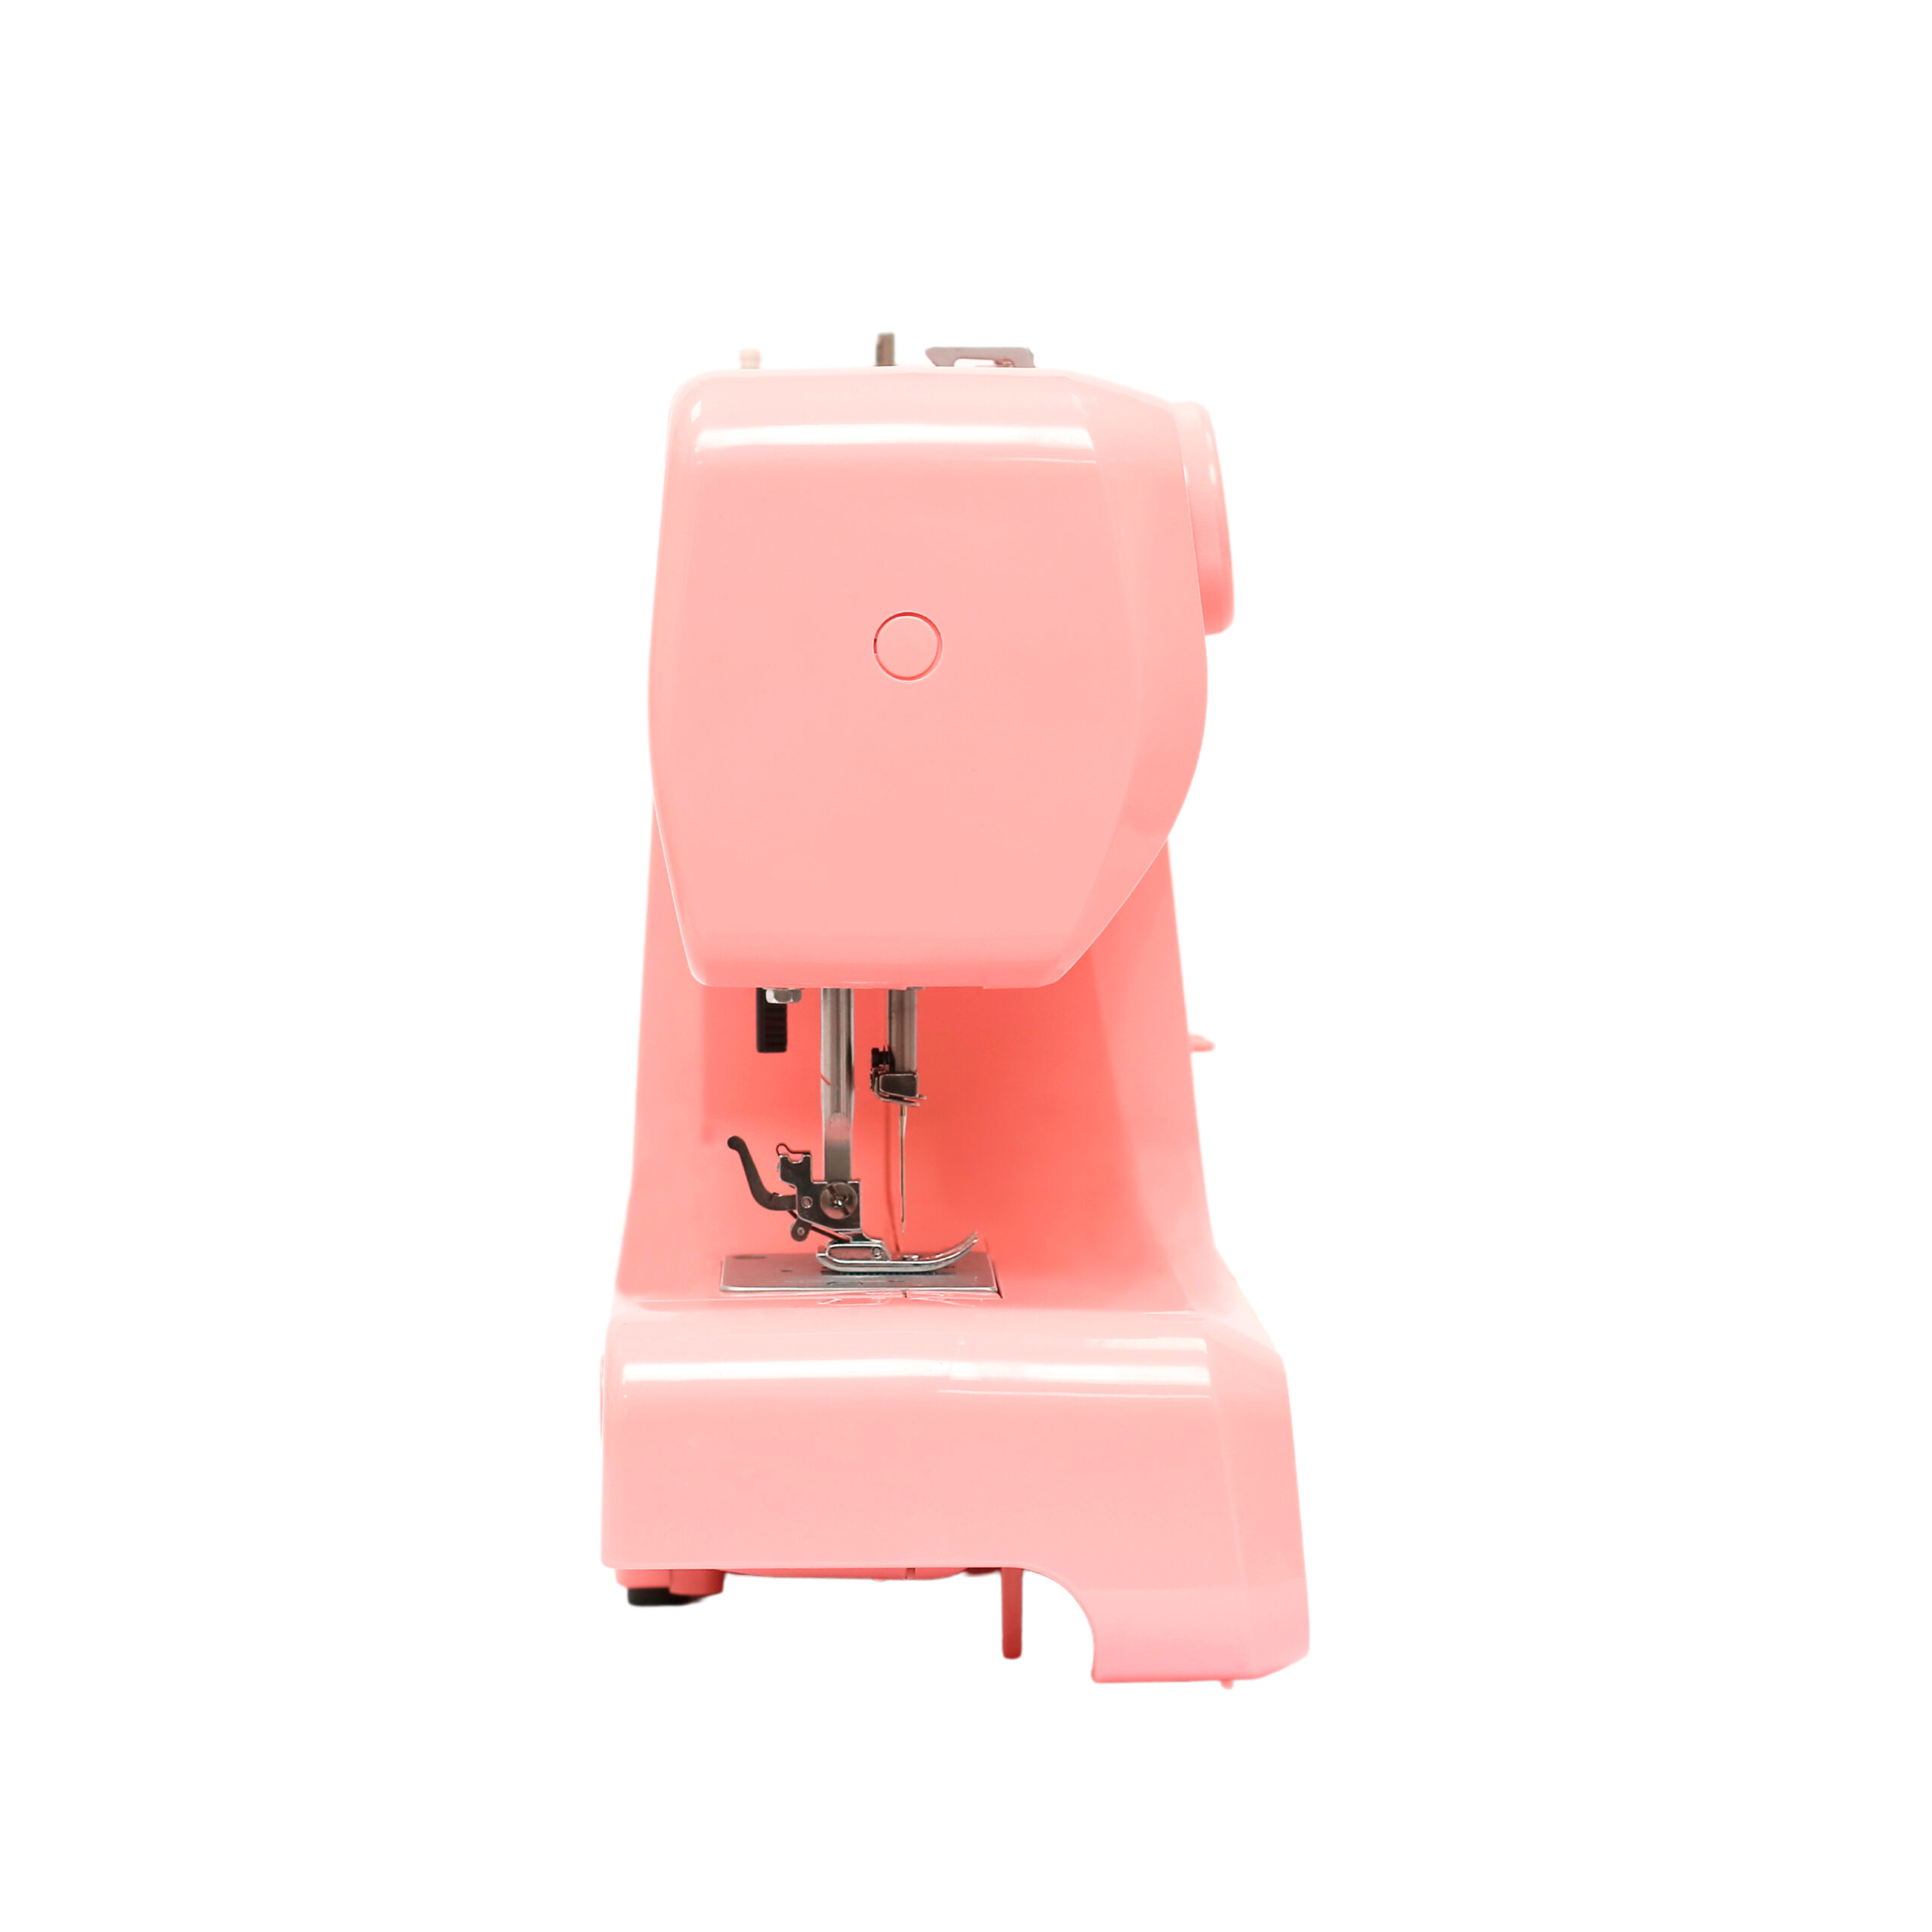 Máquina de coser rosada